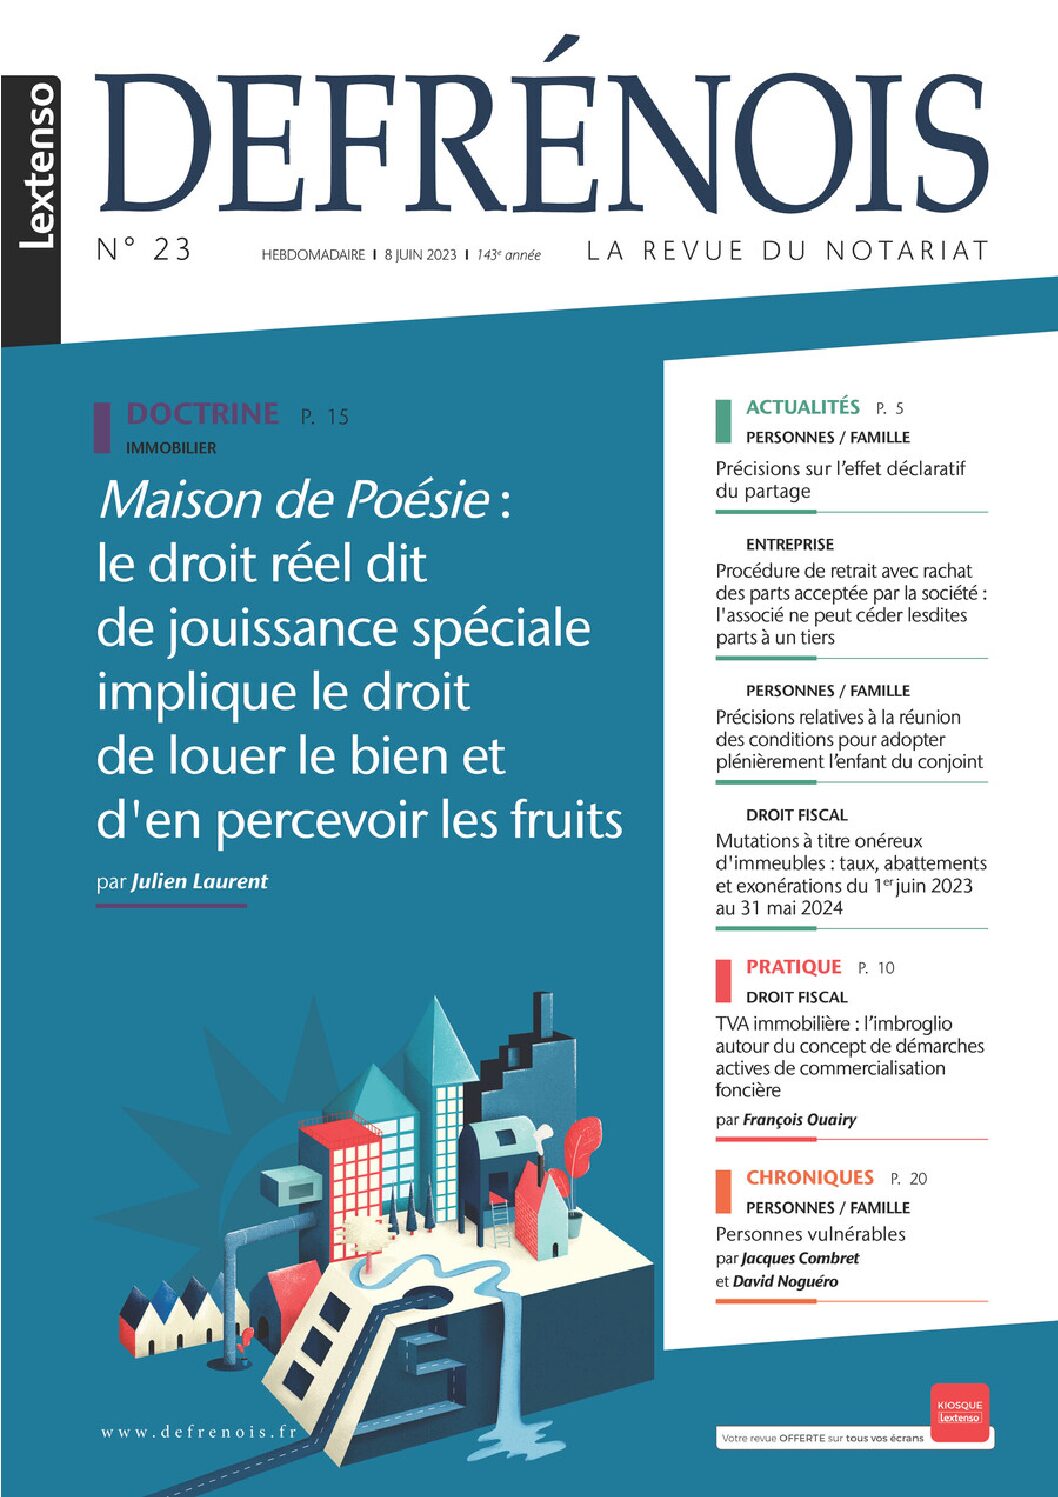 Defrénois n°23, François OUAIRY fiscalité immobilière